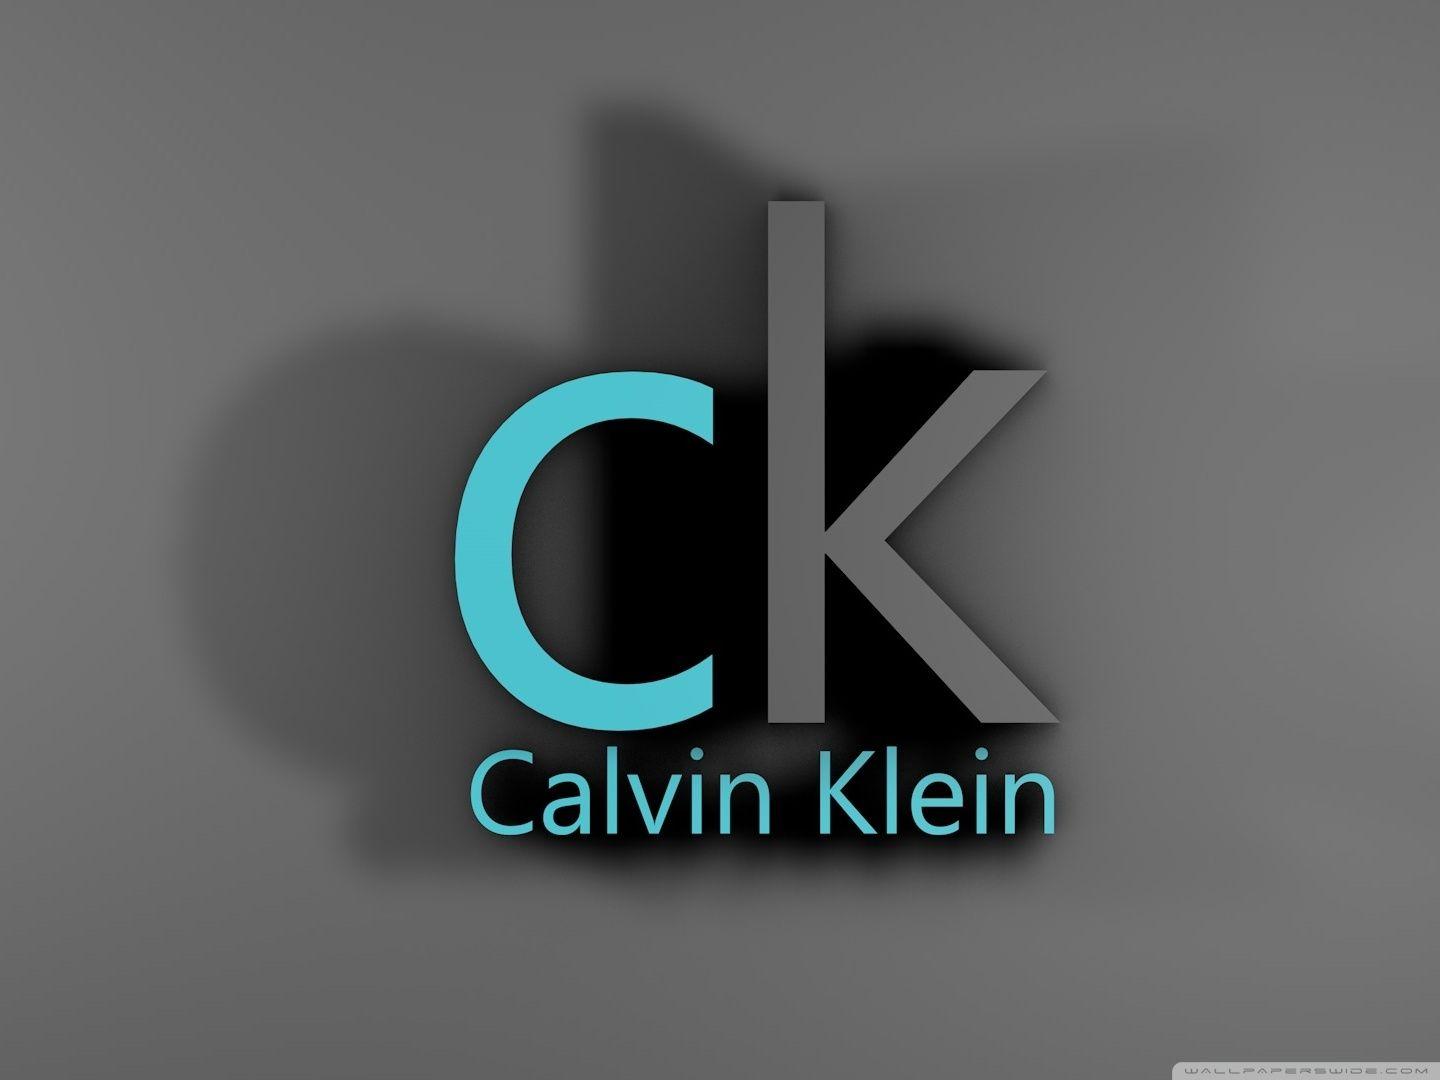 Calvin Klein HD desktop wallpaper, Widescreen, High Definition